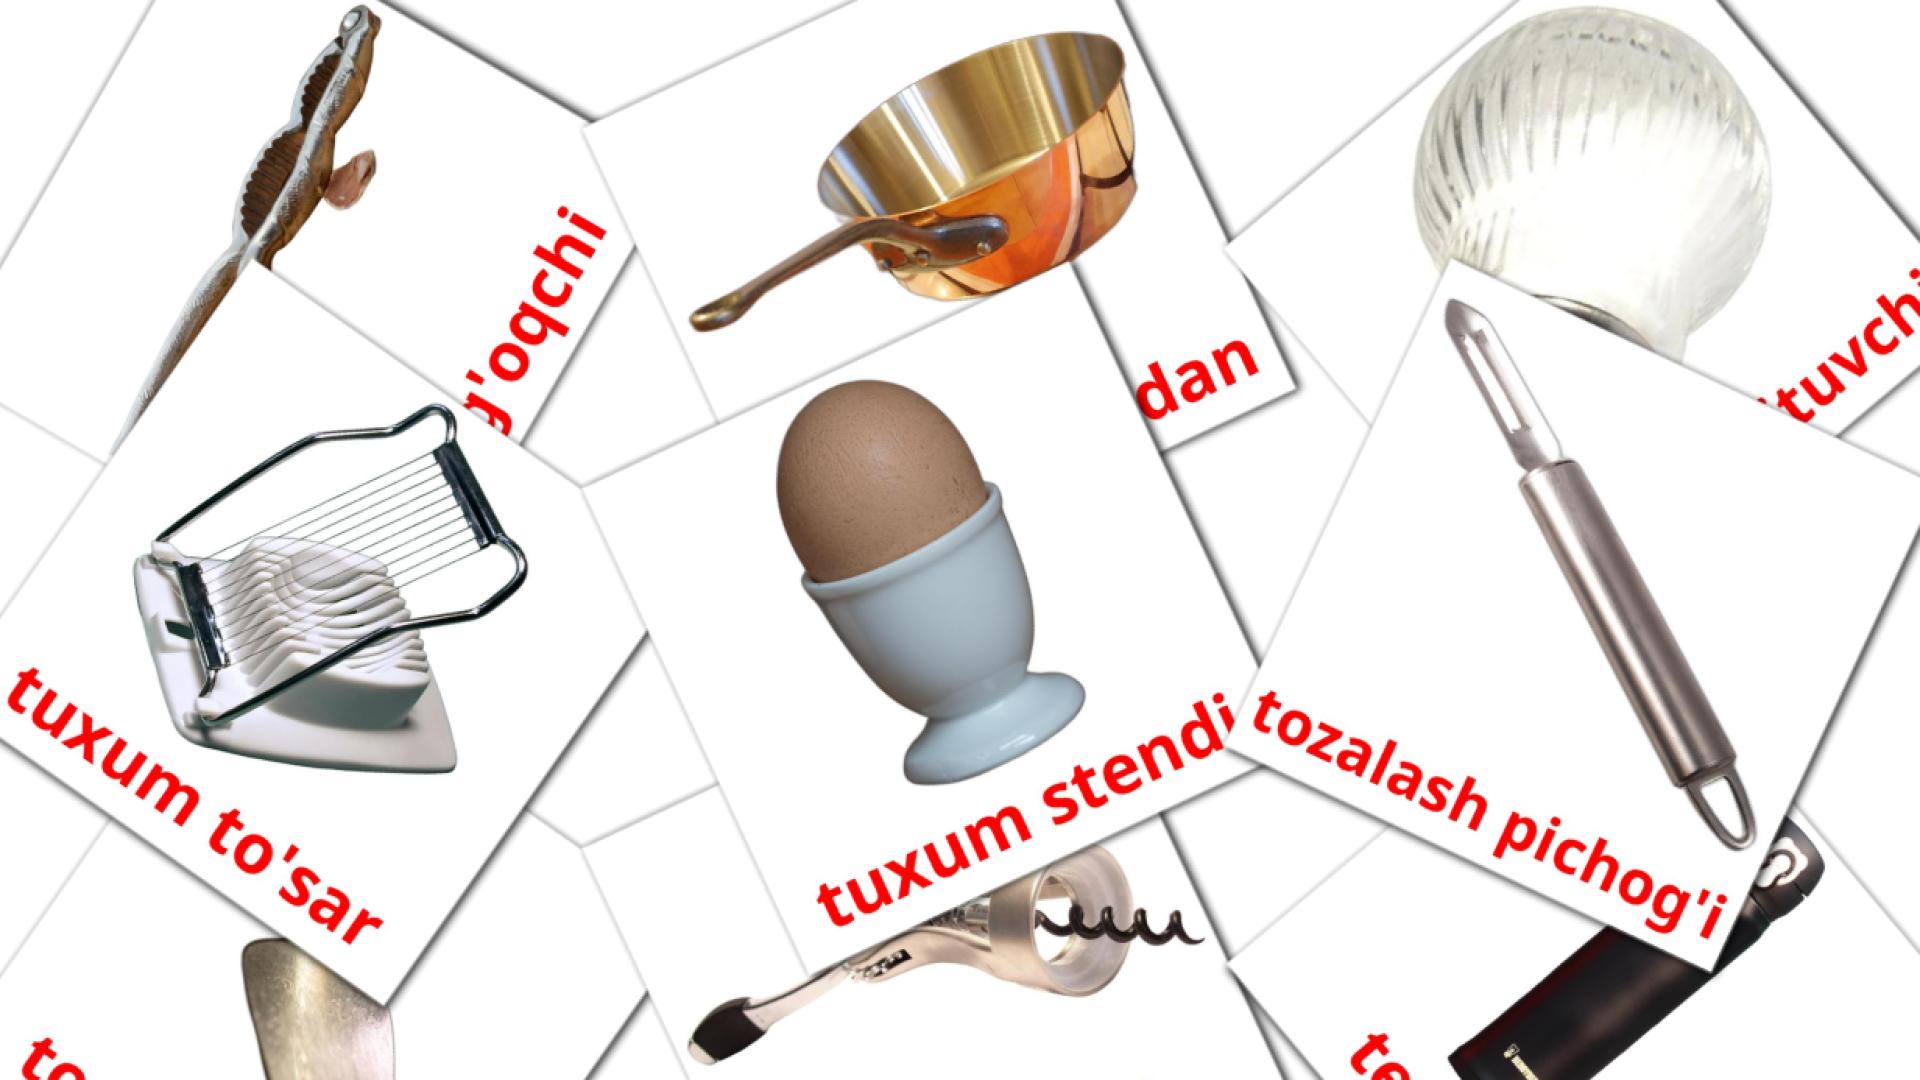 oshxona uzbek vocabulary flashcards